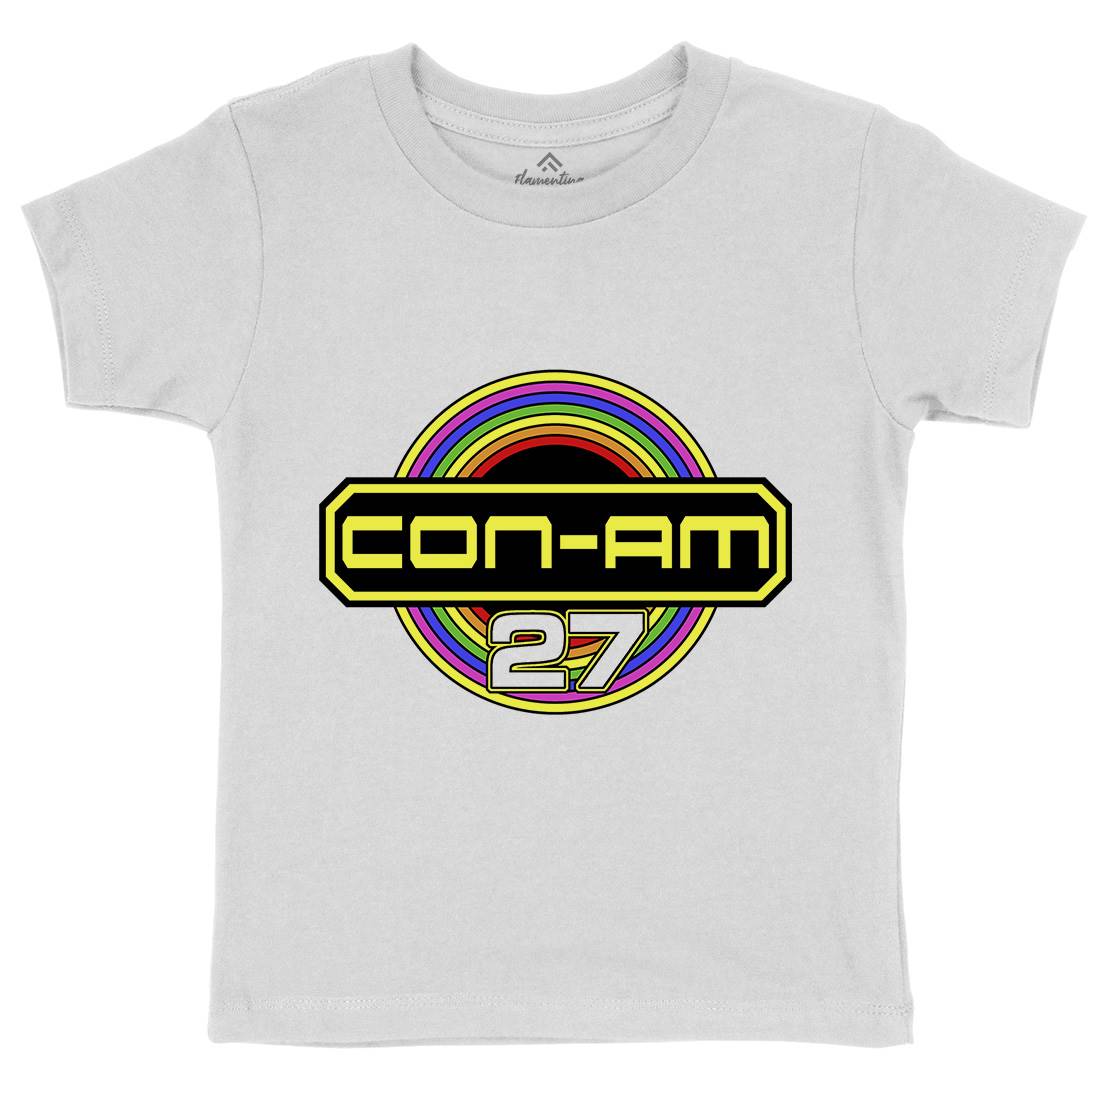 Con-Am 27 Kids Crew Neck T-Shirt Space D414